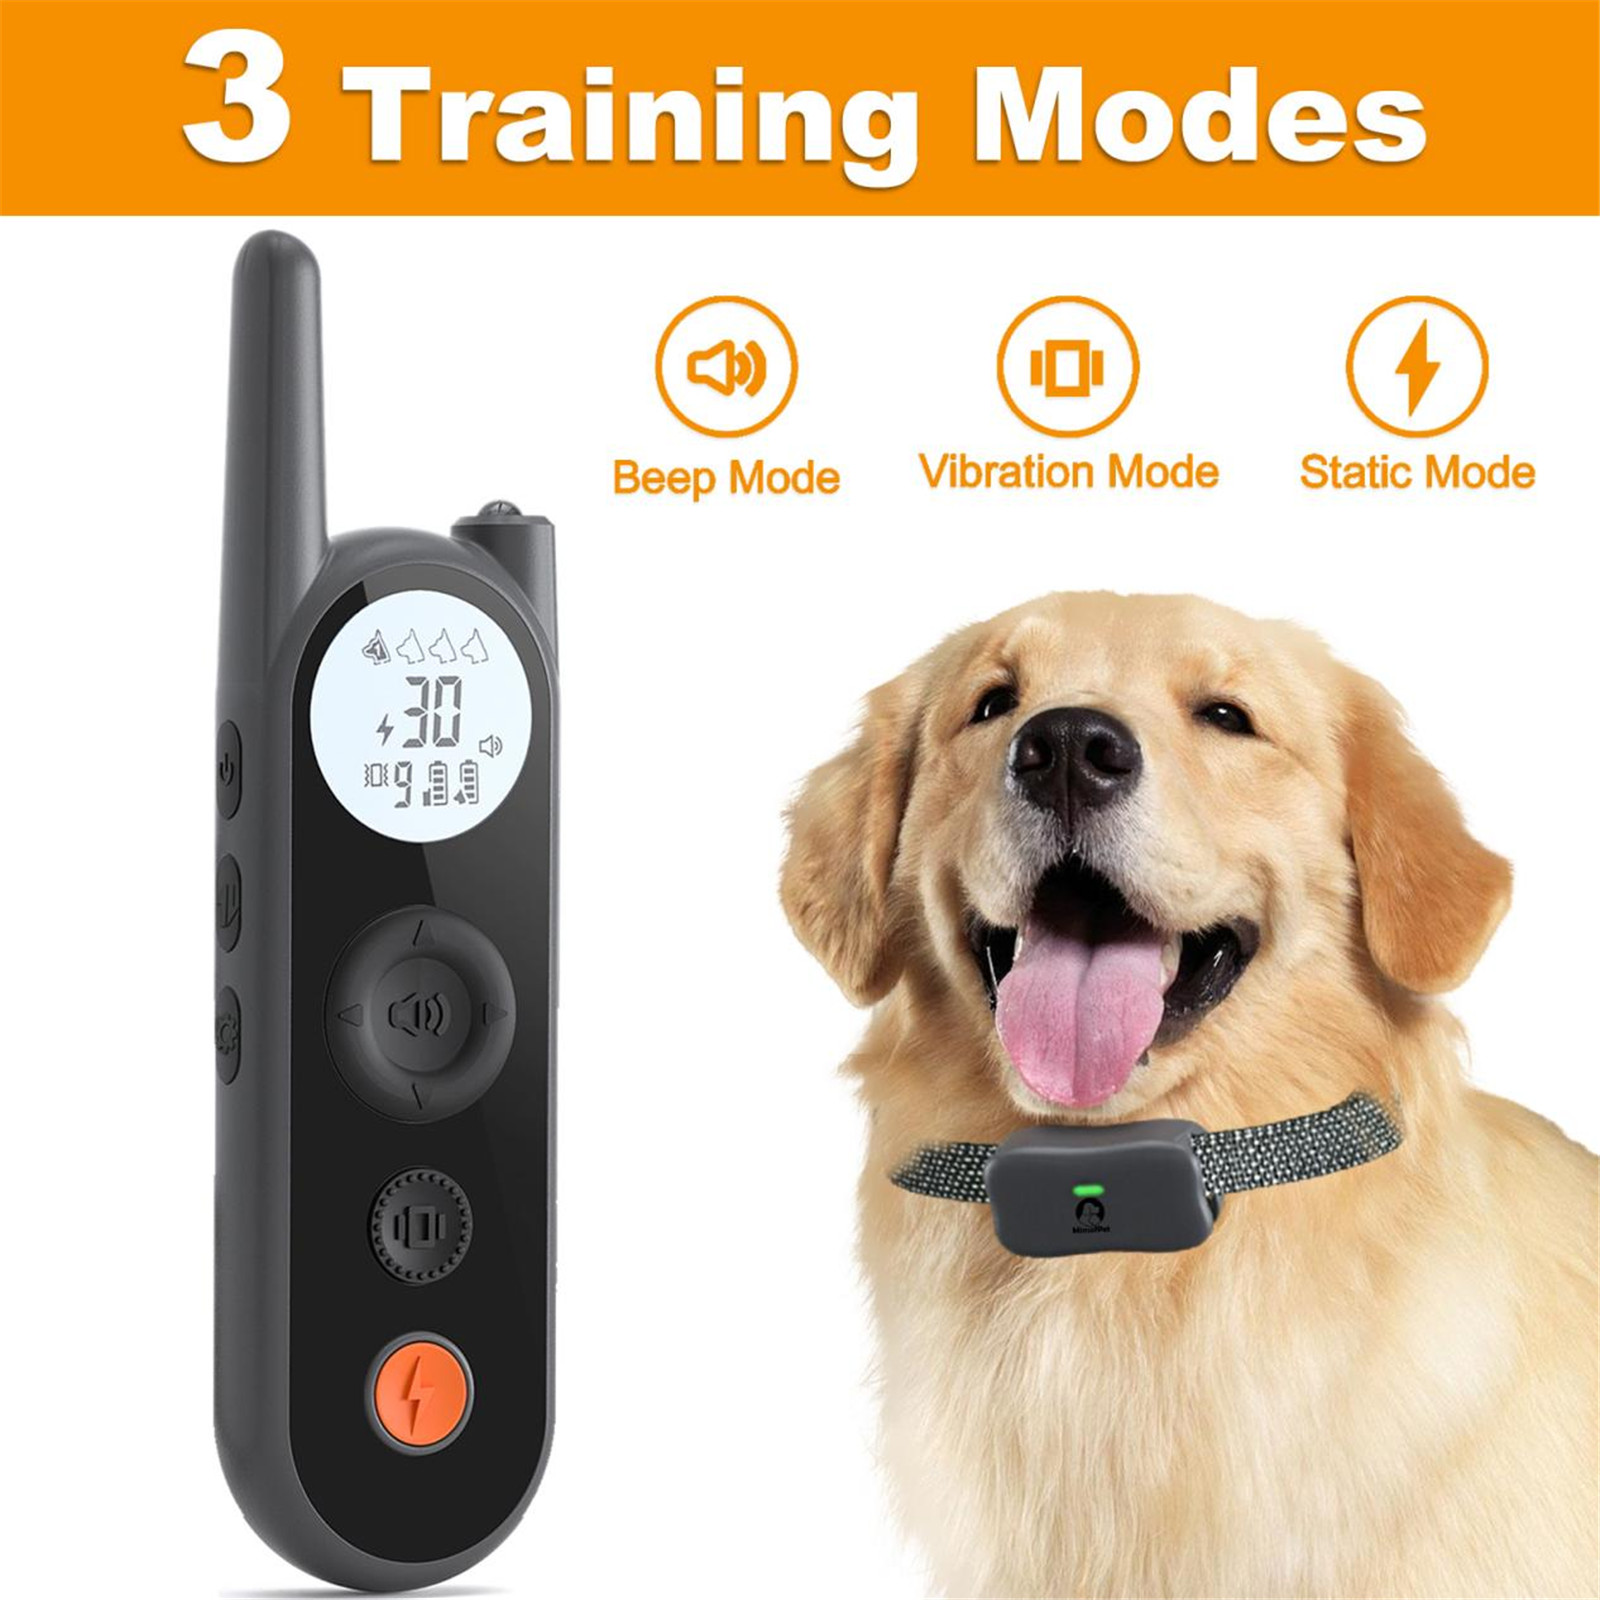 แนะนำเกี่ยวกับปลอกคอฝึกสุนัขรุ่น Mimofpet X201 (11)